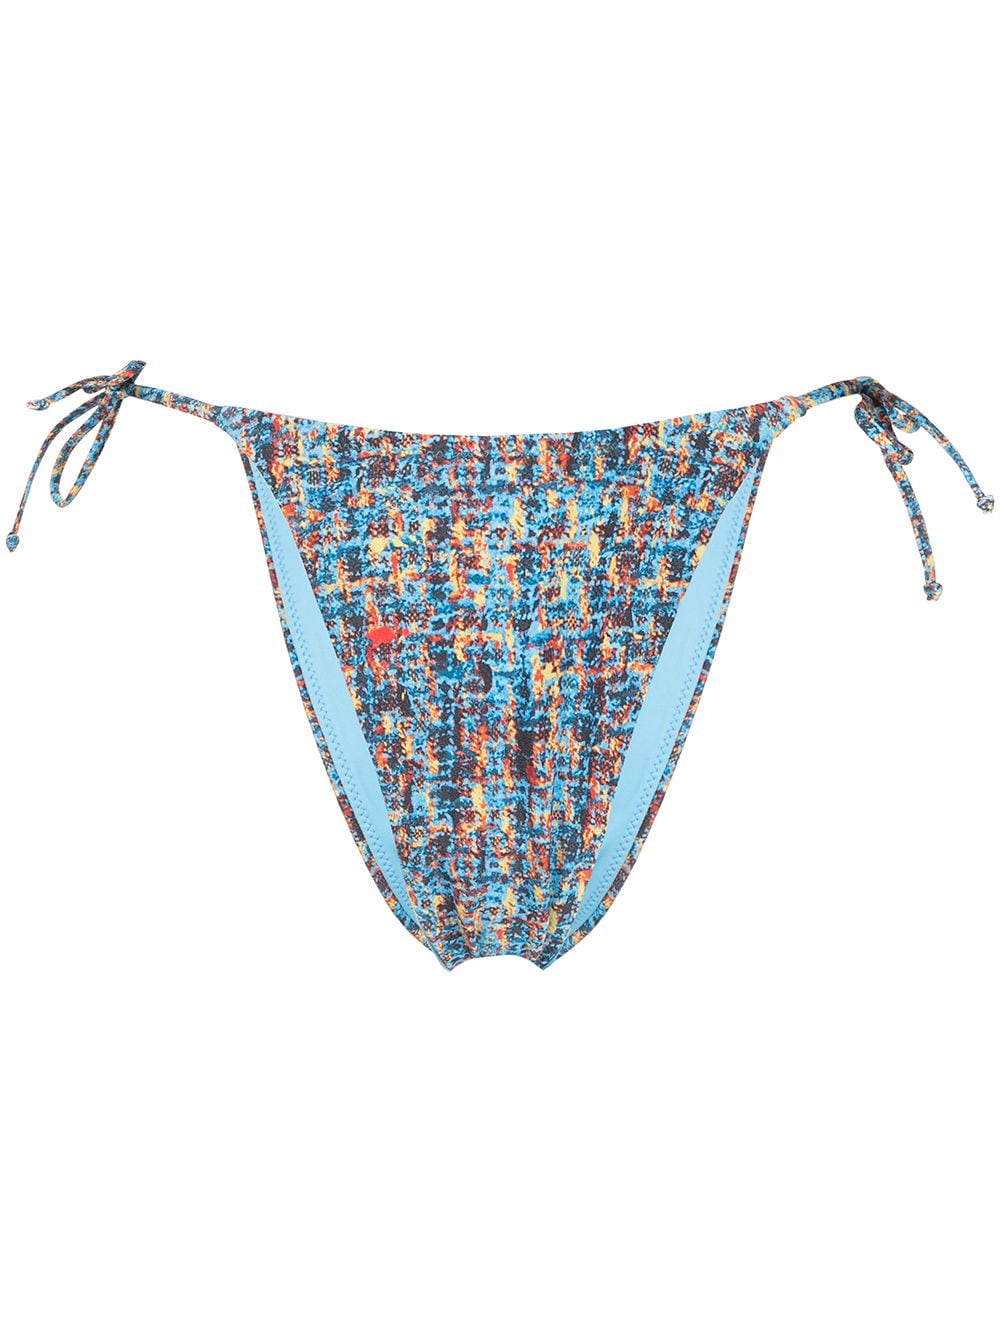 Sian Swimwear Halle 2 side-tie bikini bottoms - Blue von Sian Swimwear